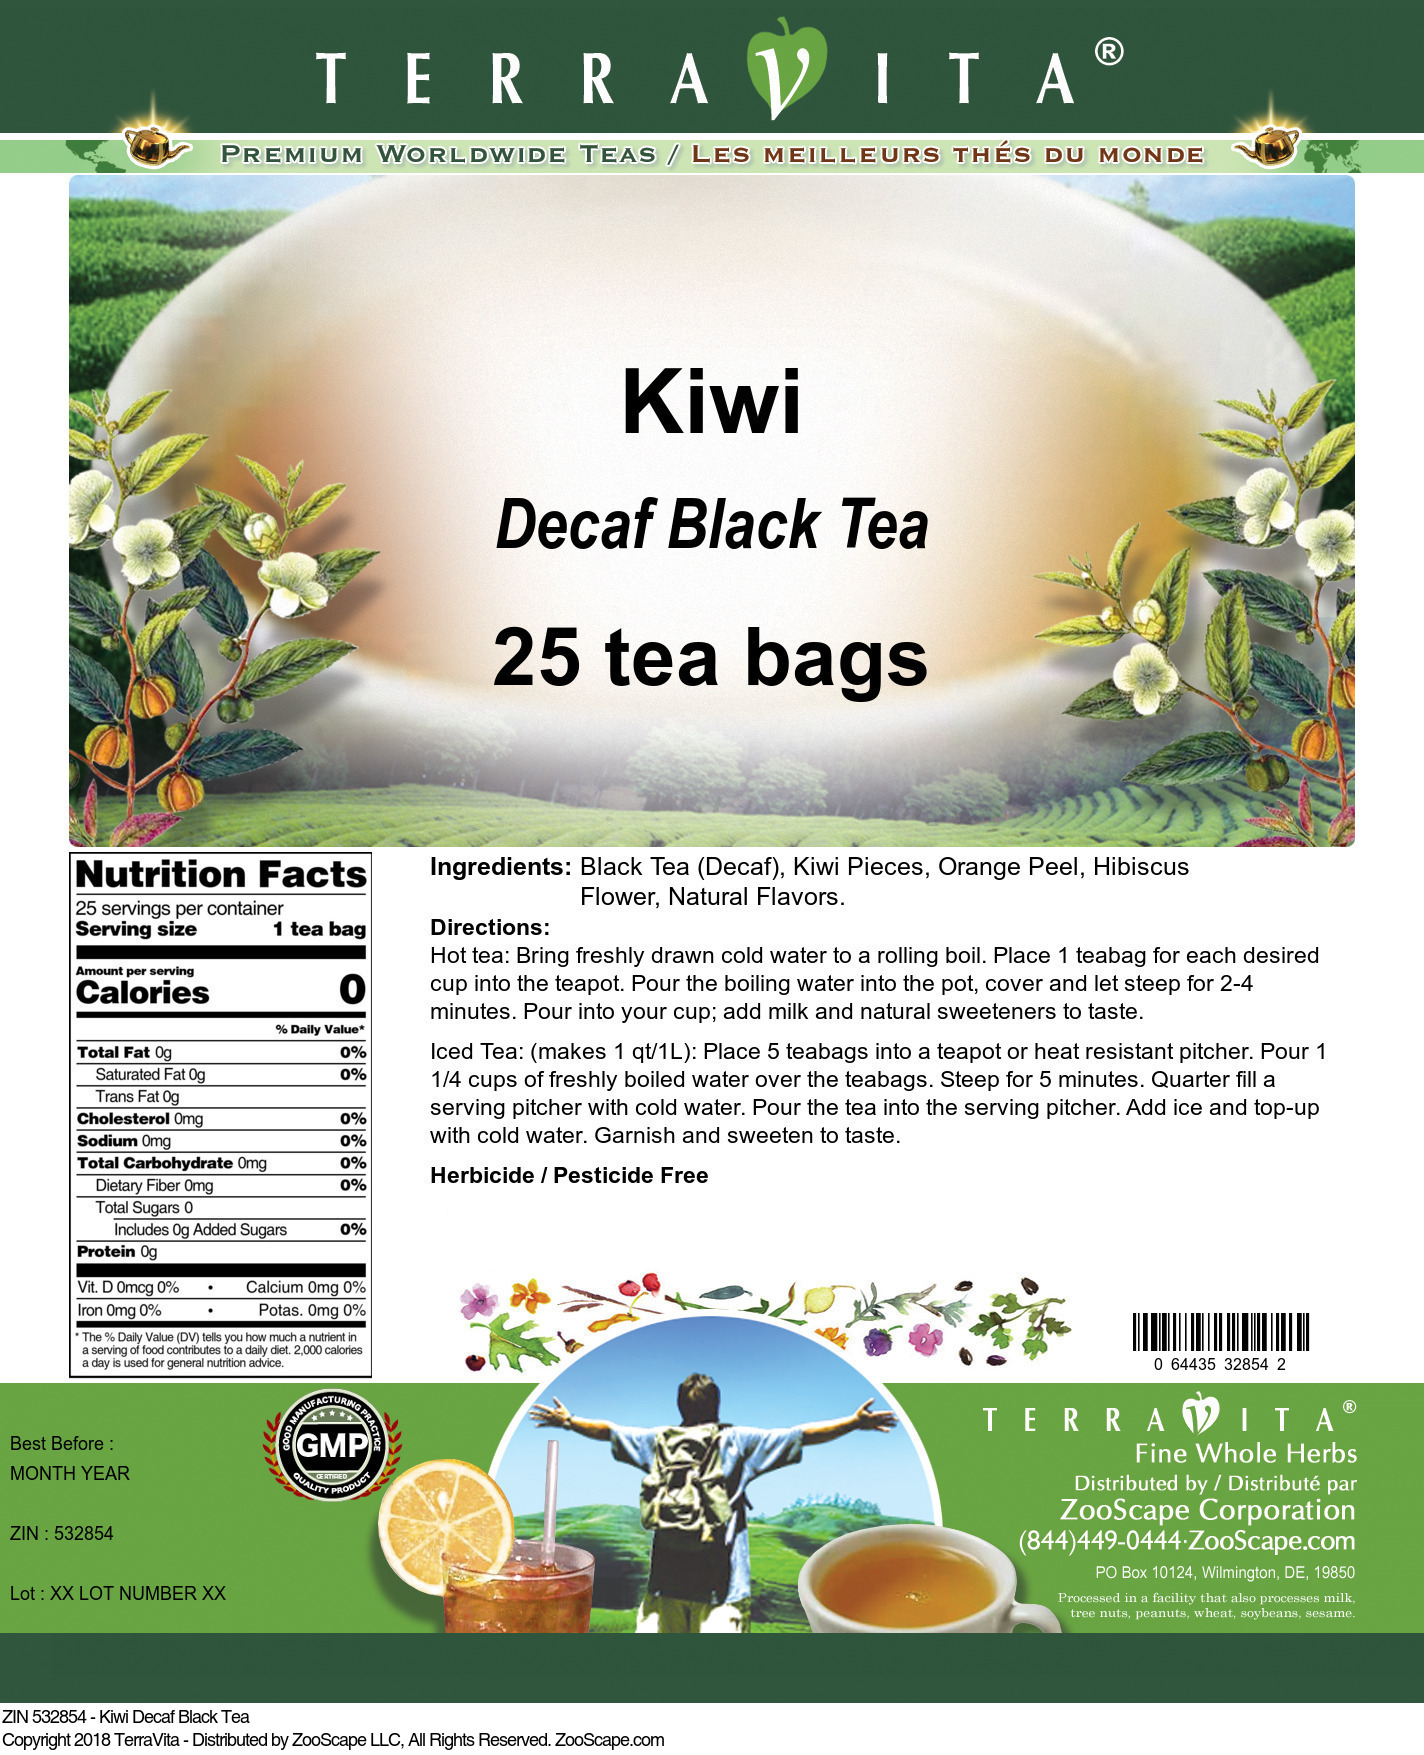 Kiwi Decaf Black Tea - Label